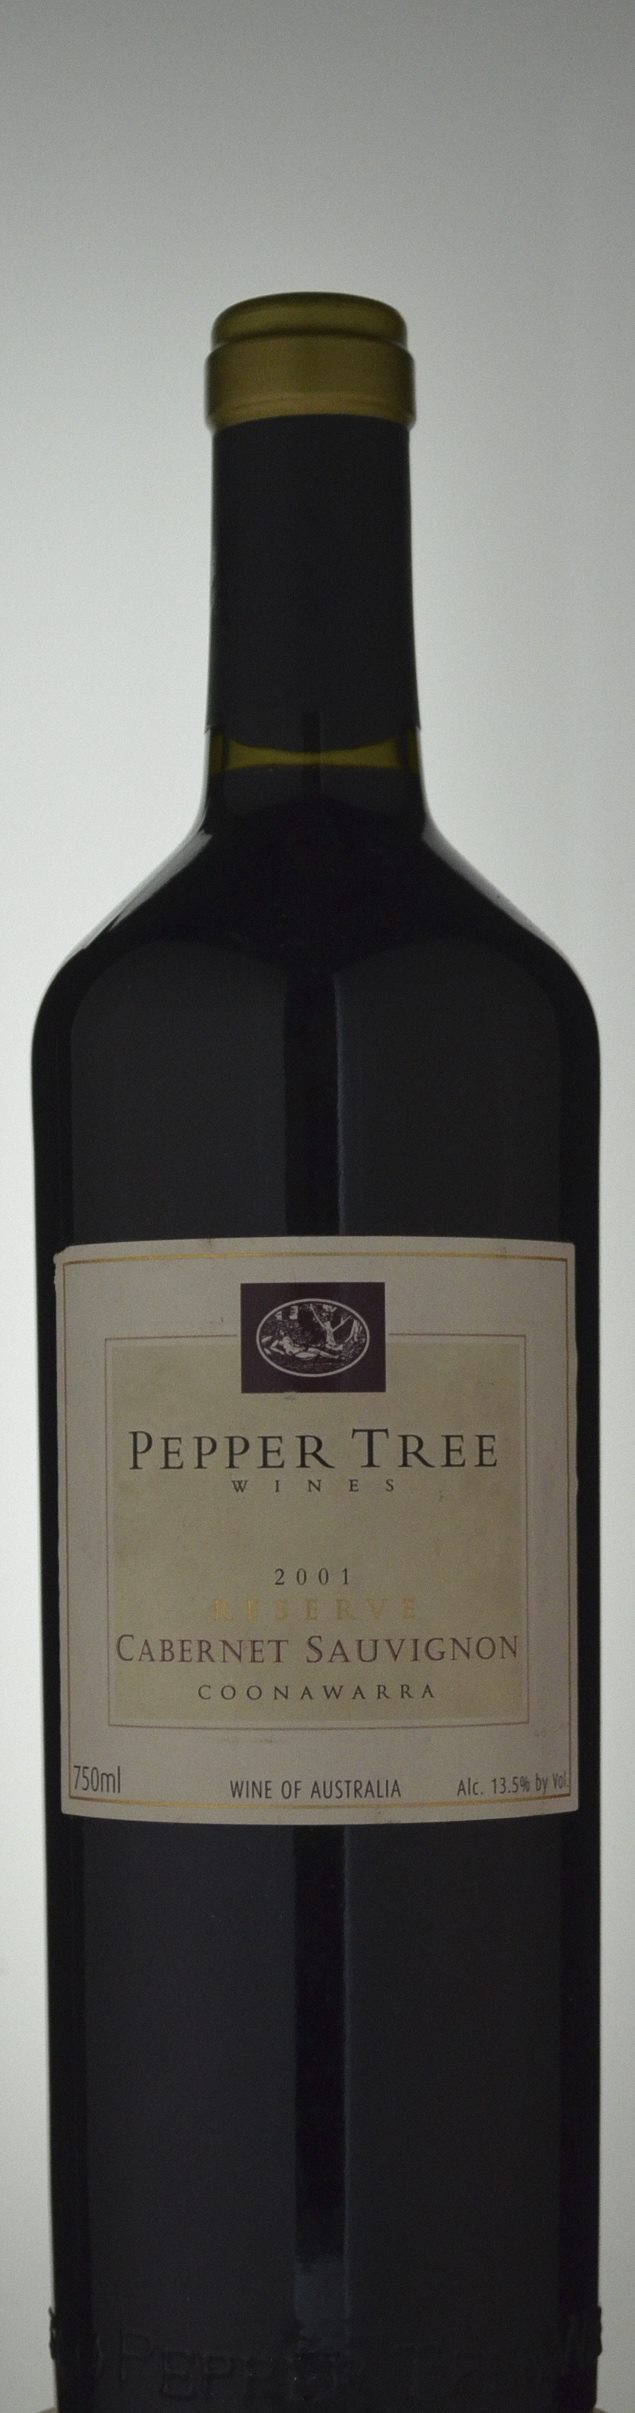 Pepper Tree Reserve Cabernet Sauvignon 2001